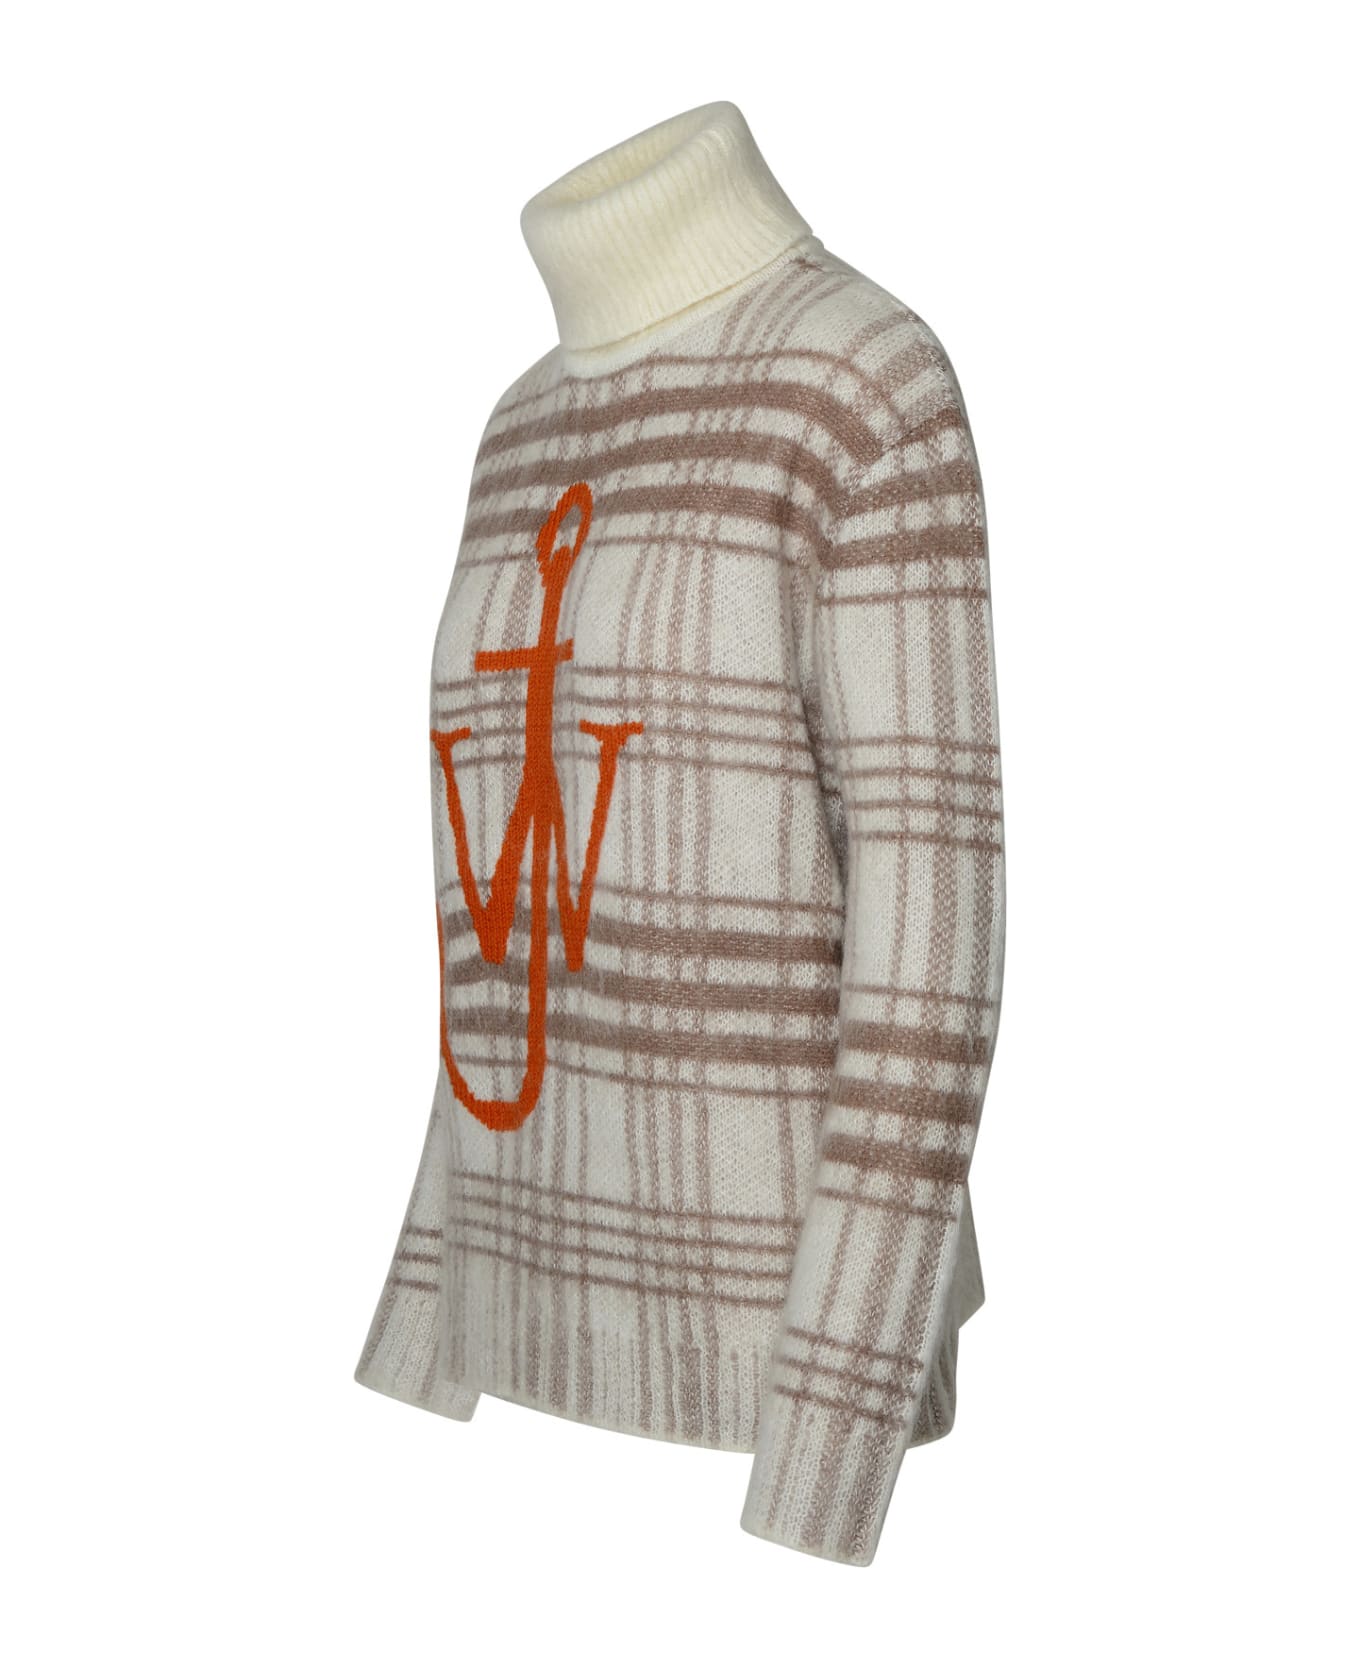 J.W. Anderson Beige Wool Turtleneck Sweater - Beige